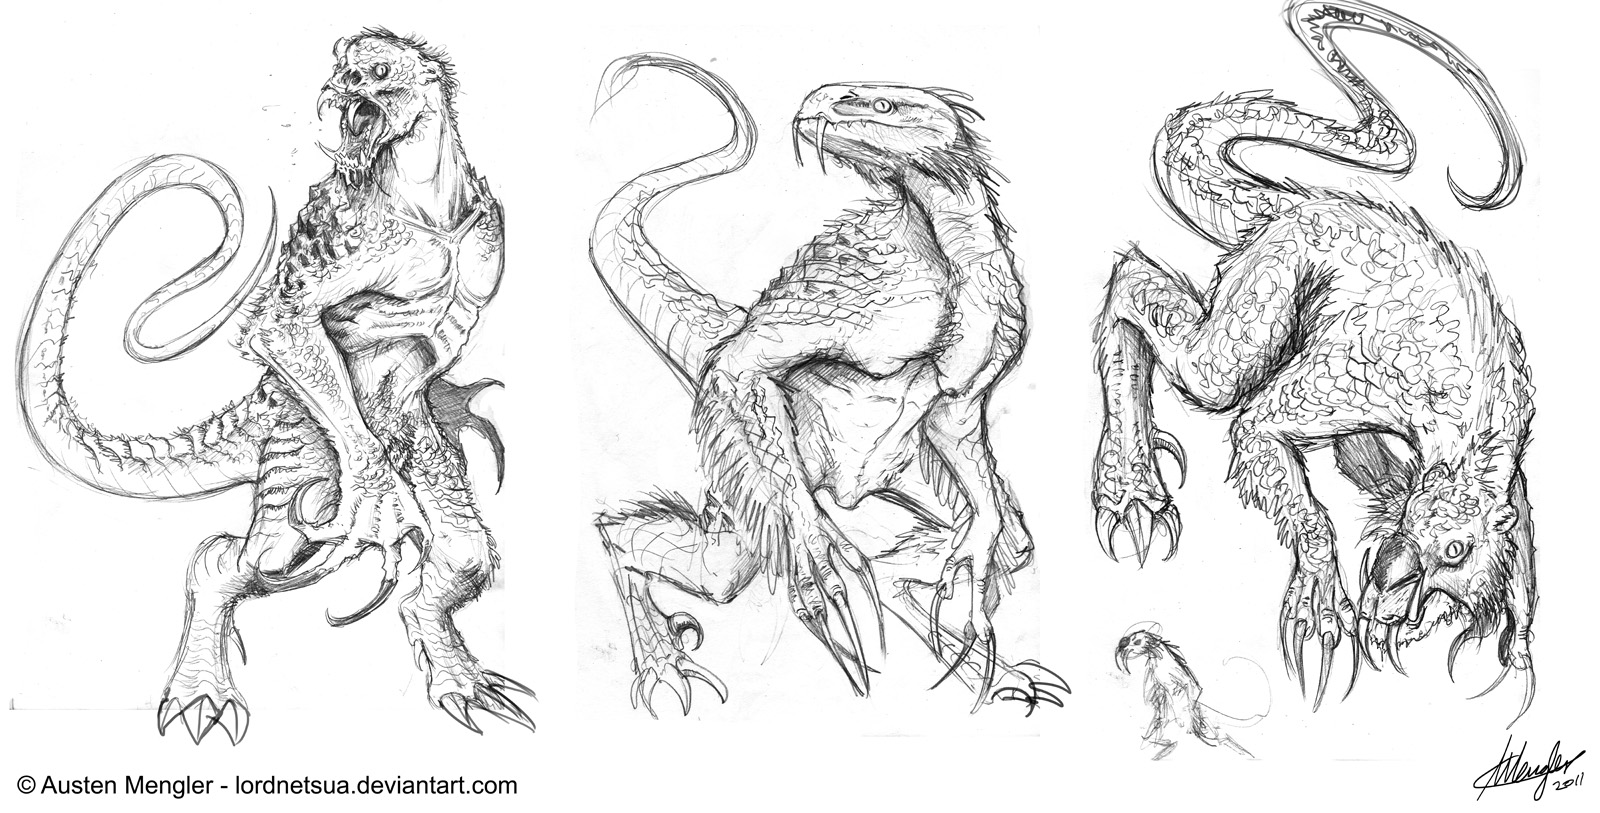 MEYSTER] Mutations by RigelWeiss on DeviantArt  Creature concept art,  Creature drawings, Creature art